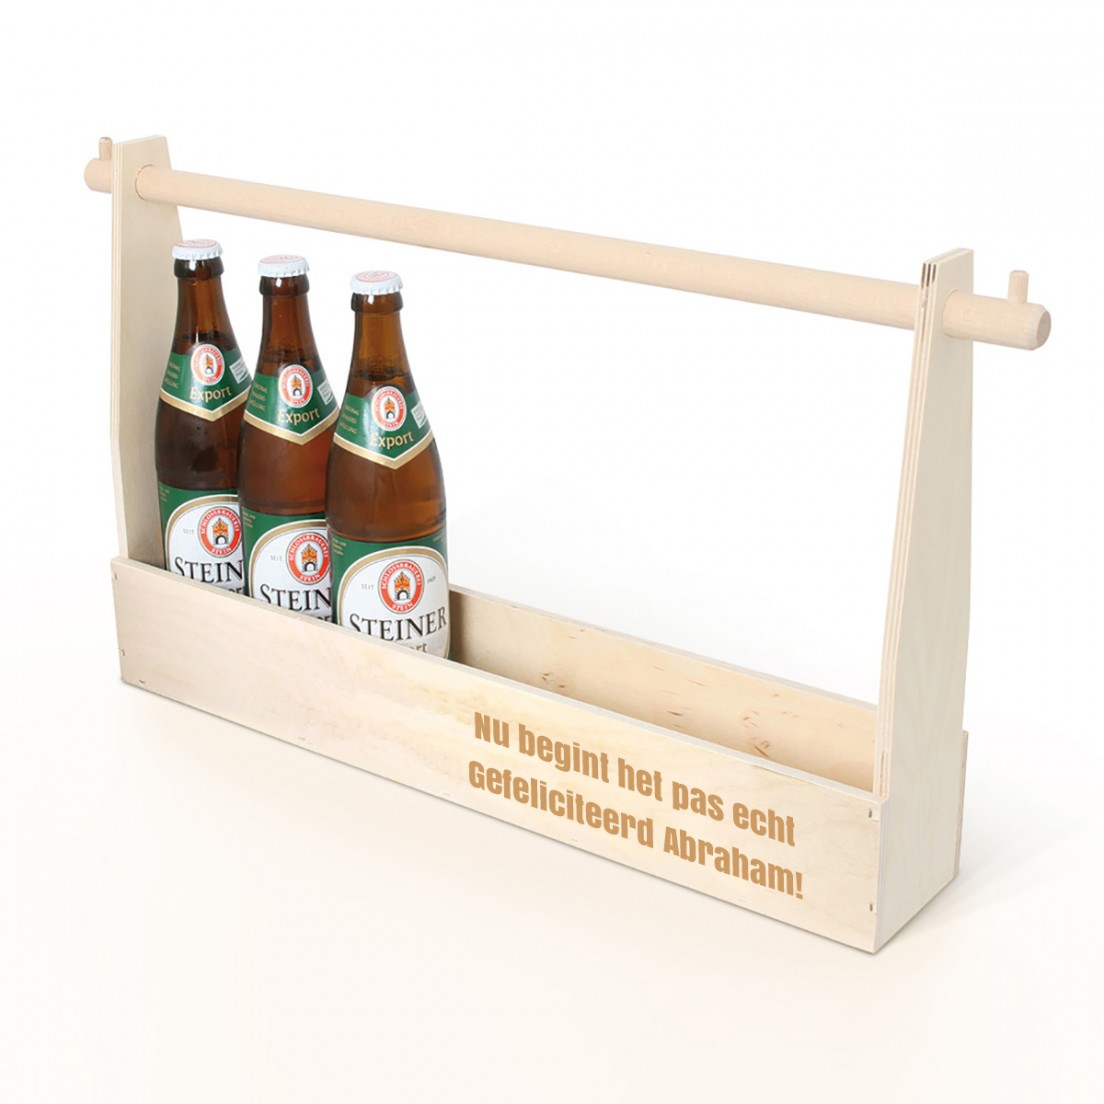 magnifiek Wedstrijd Bloody Halve meter bier met gravure | Smyla.nl